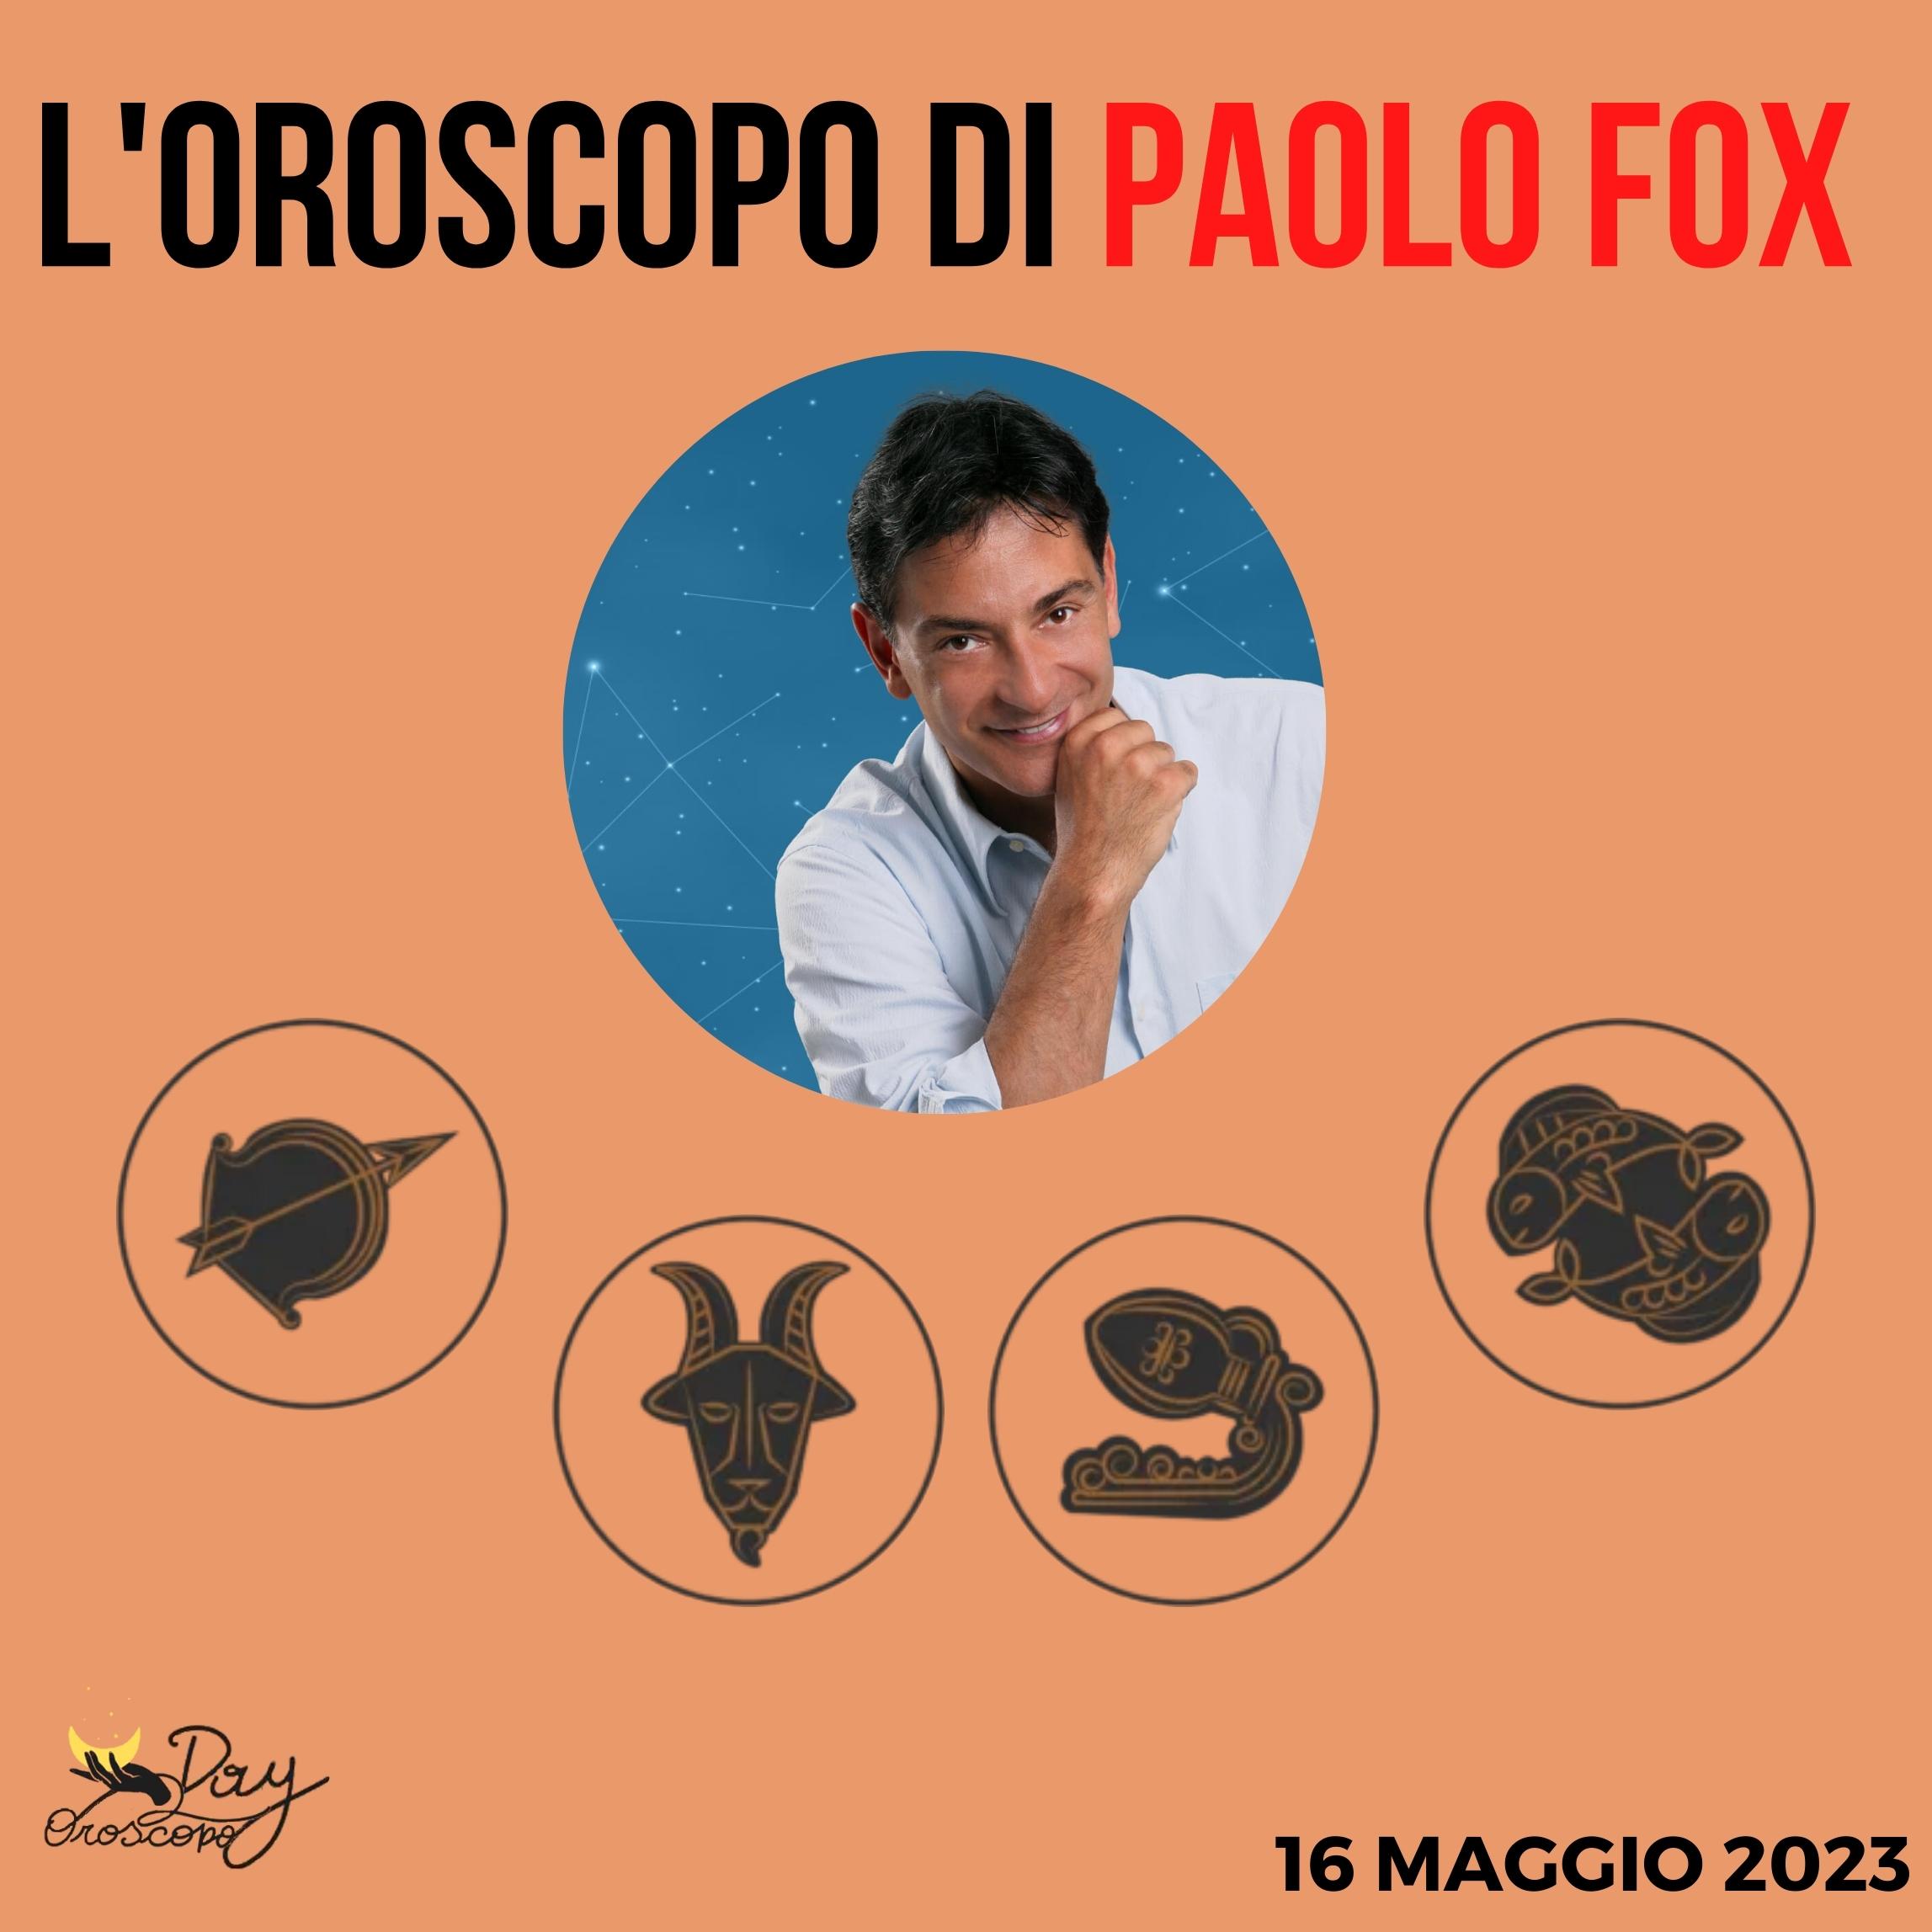 Oroscopo oggi domani Fox 16 maggio Sagittario Capricorno Acquario Pesci